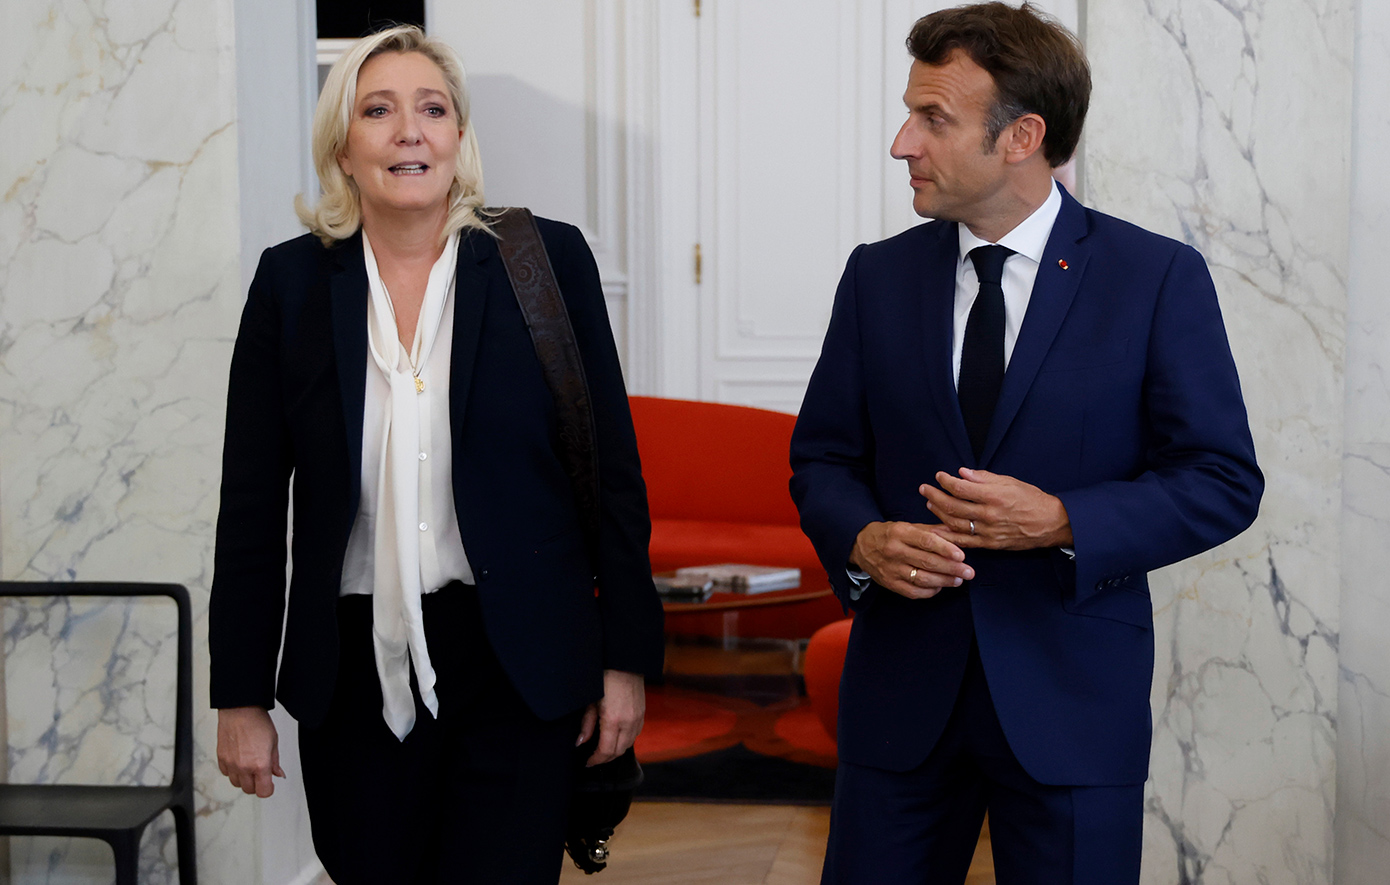 Το εκλογικό «στοίχημα» του Μακρόν που τώρα απειλεί να ανατρέψει την πολιτική τάξη πραγμάτων στη Γαλλία – Η ακροδεξιά κοντά στην εξουσία